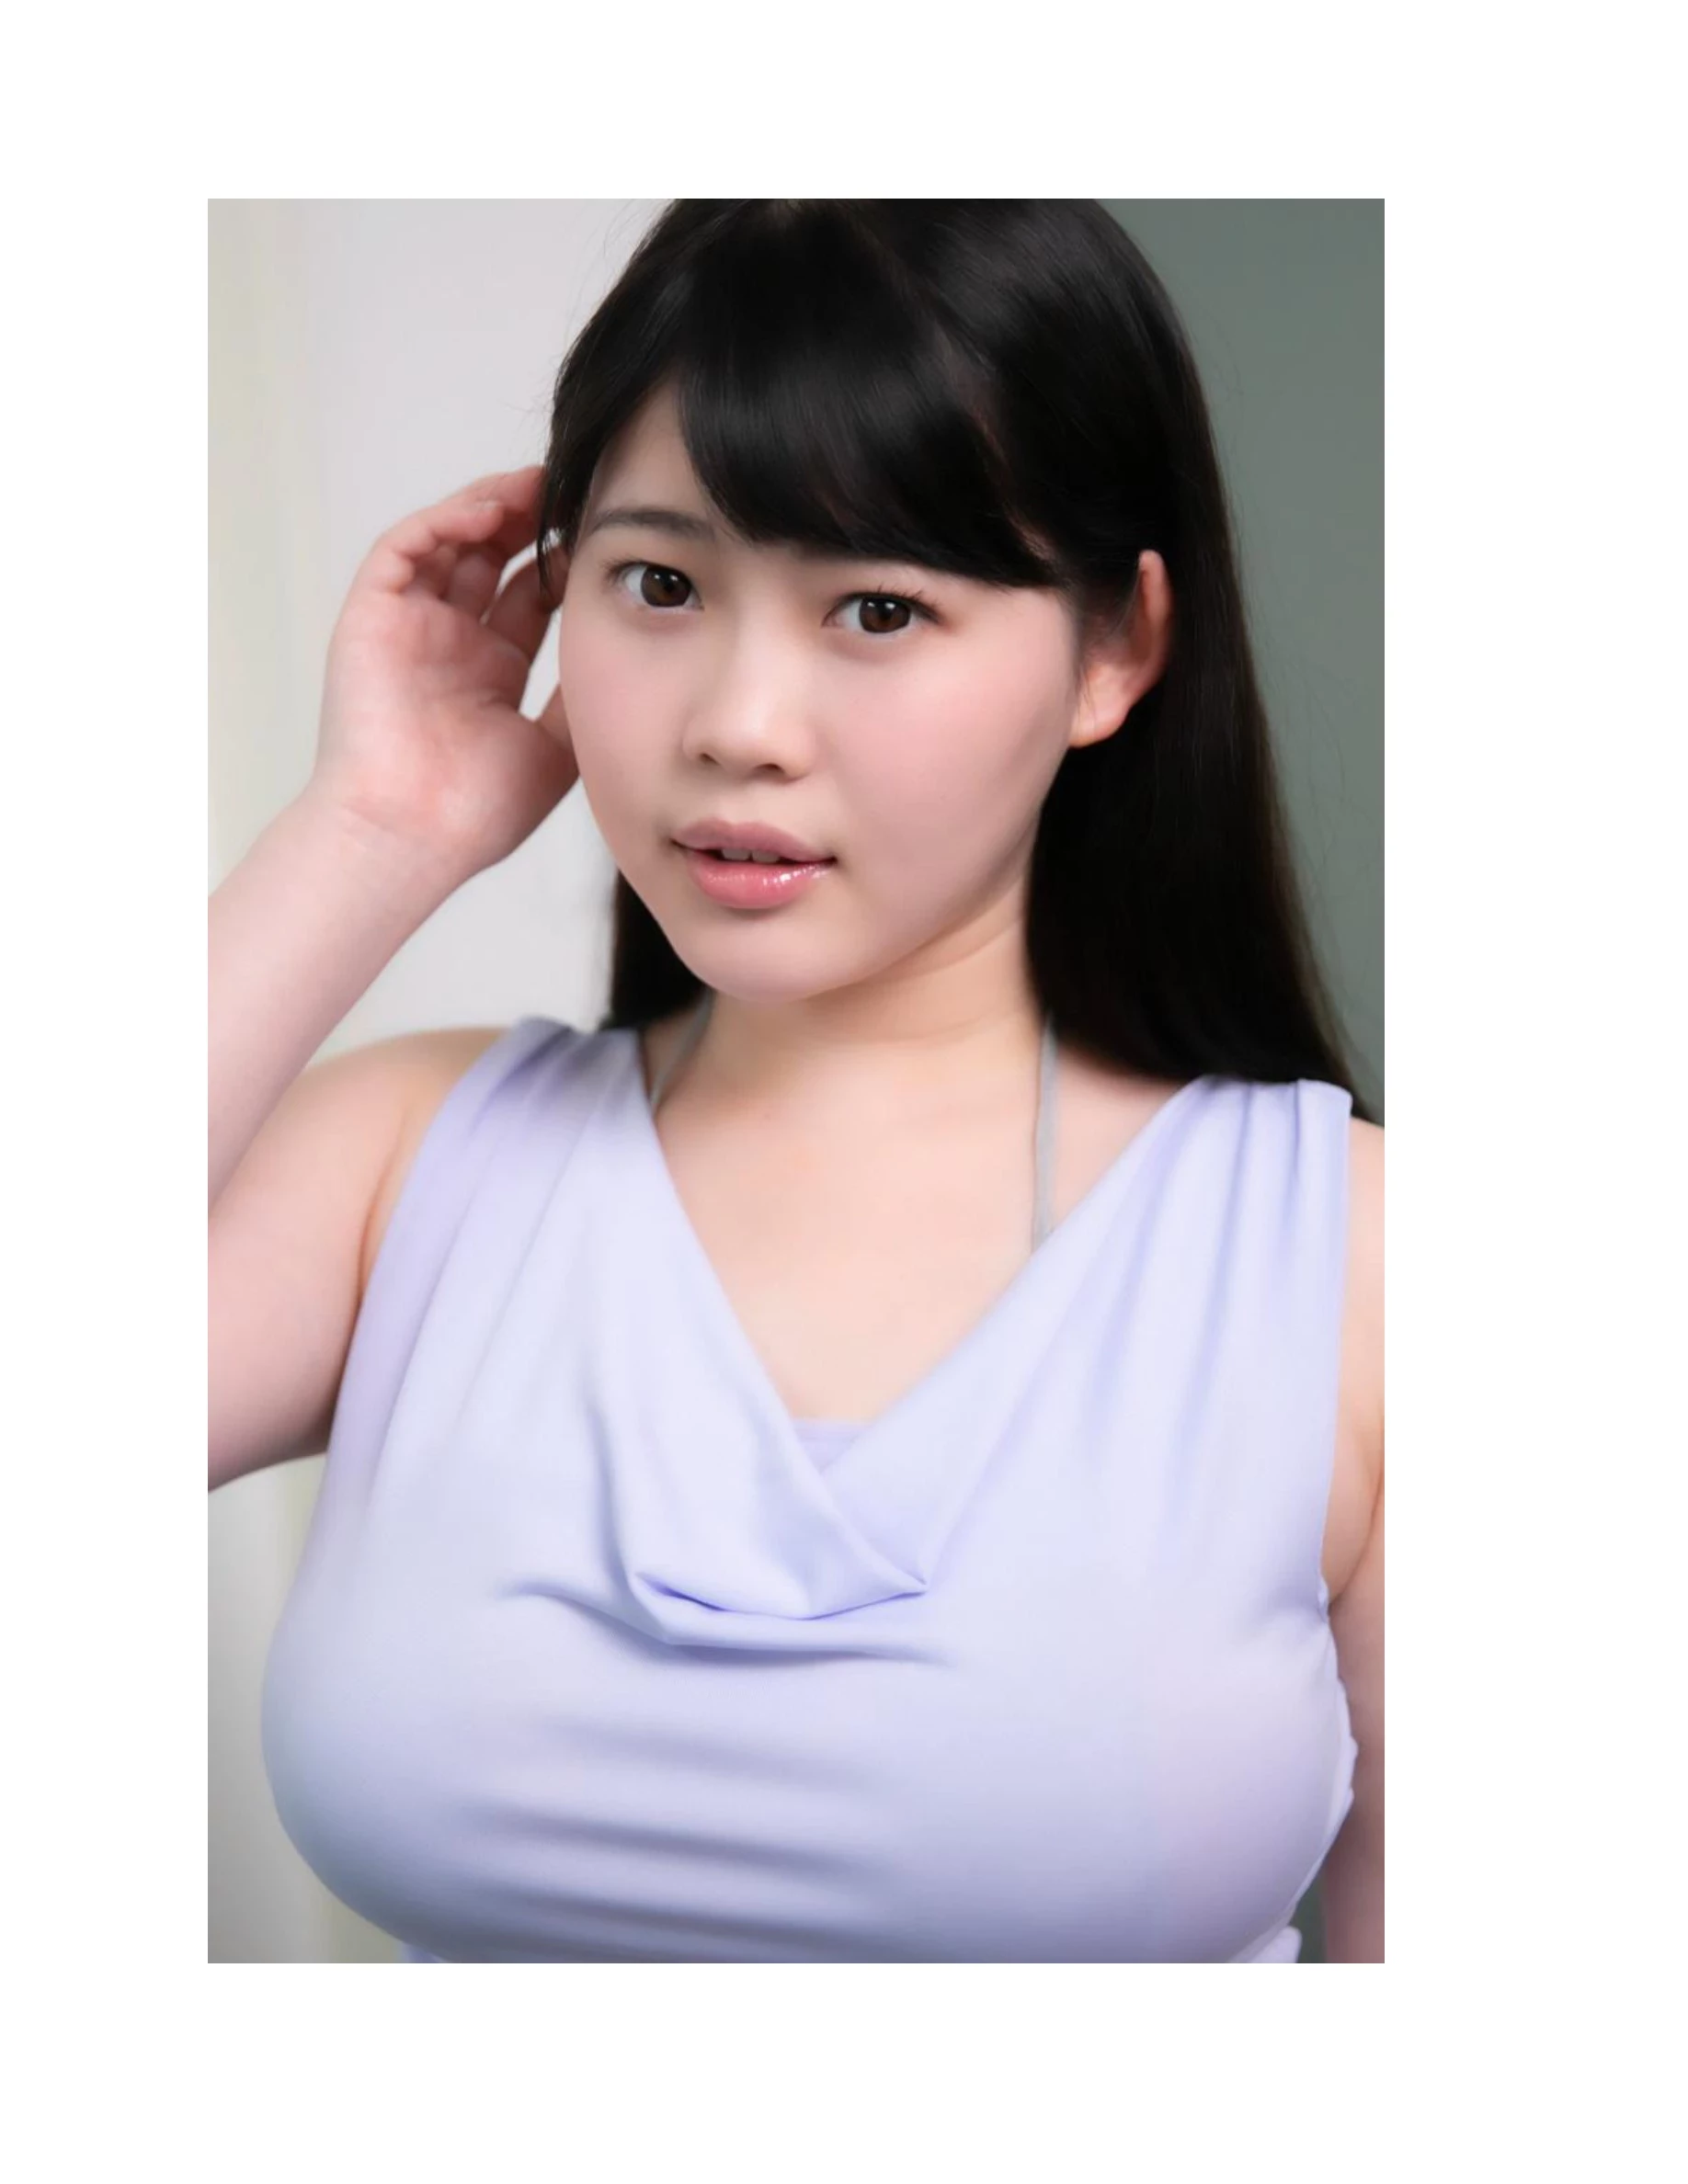 伊川愛梨 卒業旅行 夏 寫真集 J罩杯偶像美少女傳説-662